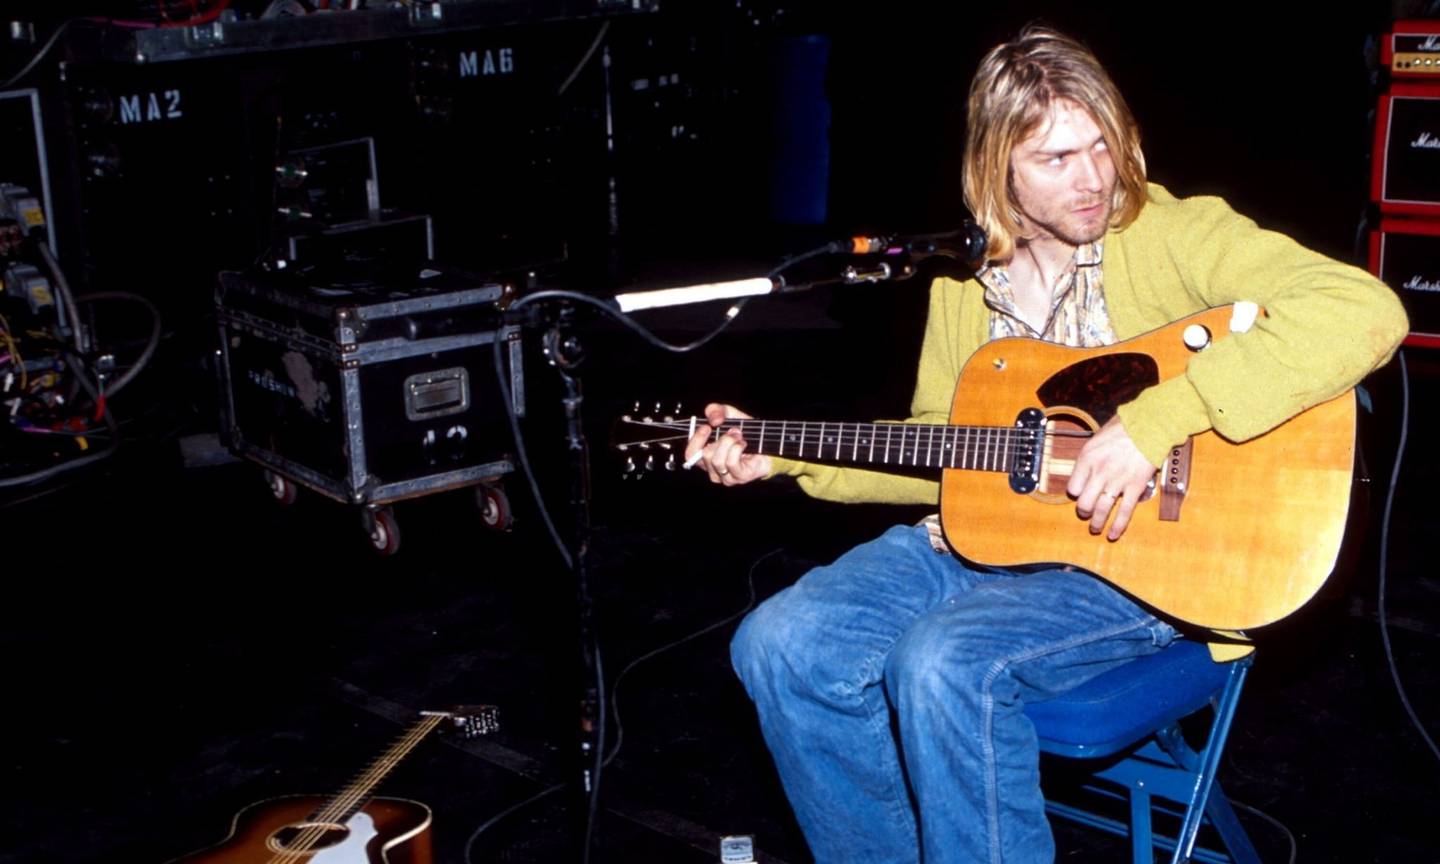 Legendario líder de Nirvana, muerto por suicidio en 1994